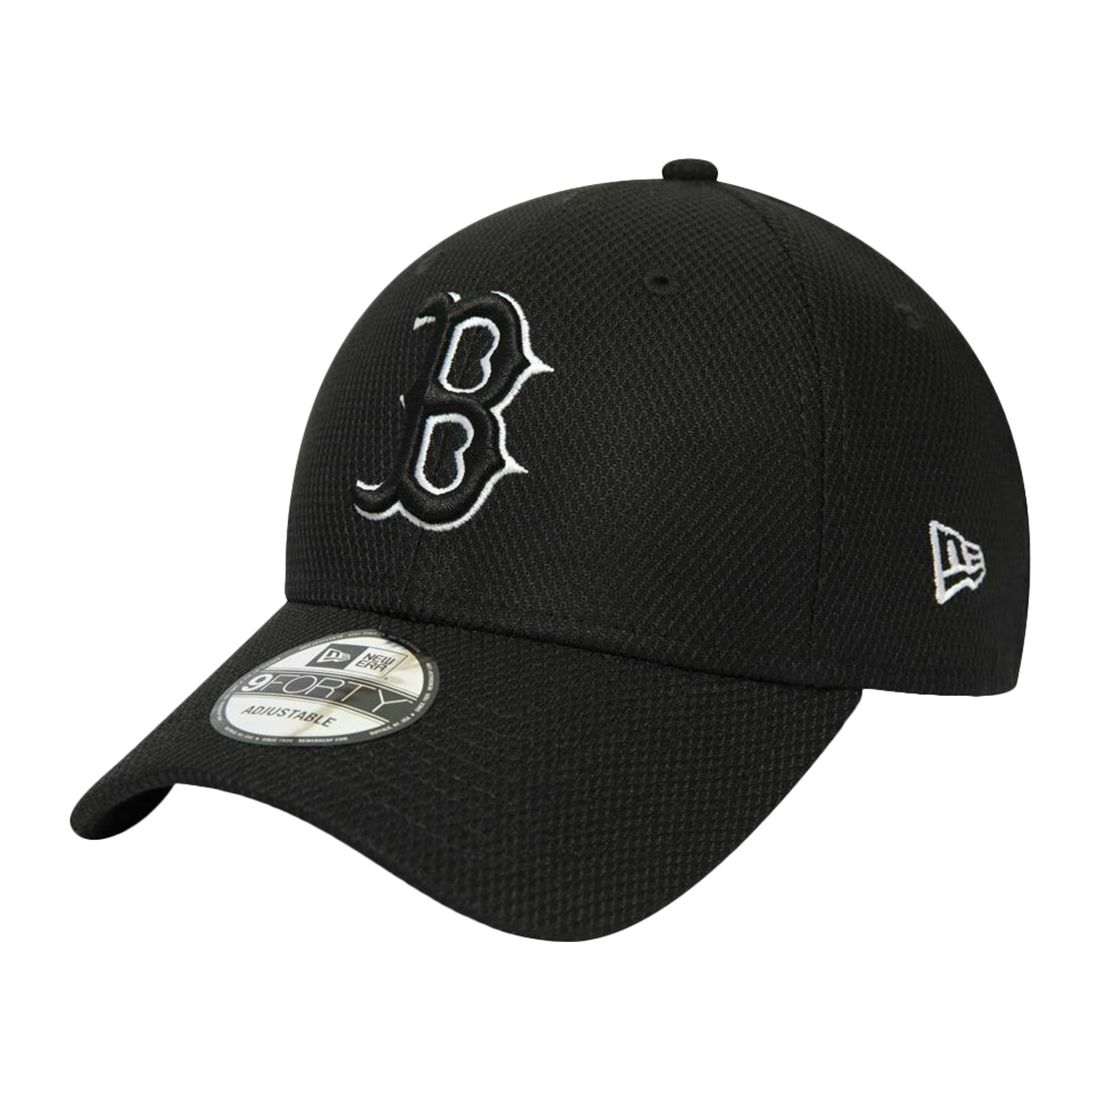 New Era Diamond Era Essential Boston Red Sox Men's Cap Black